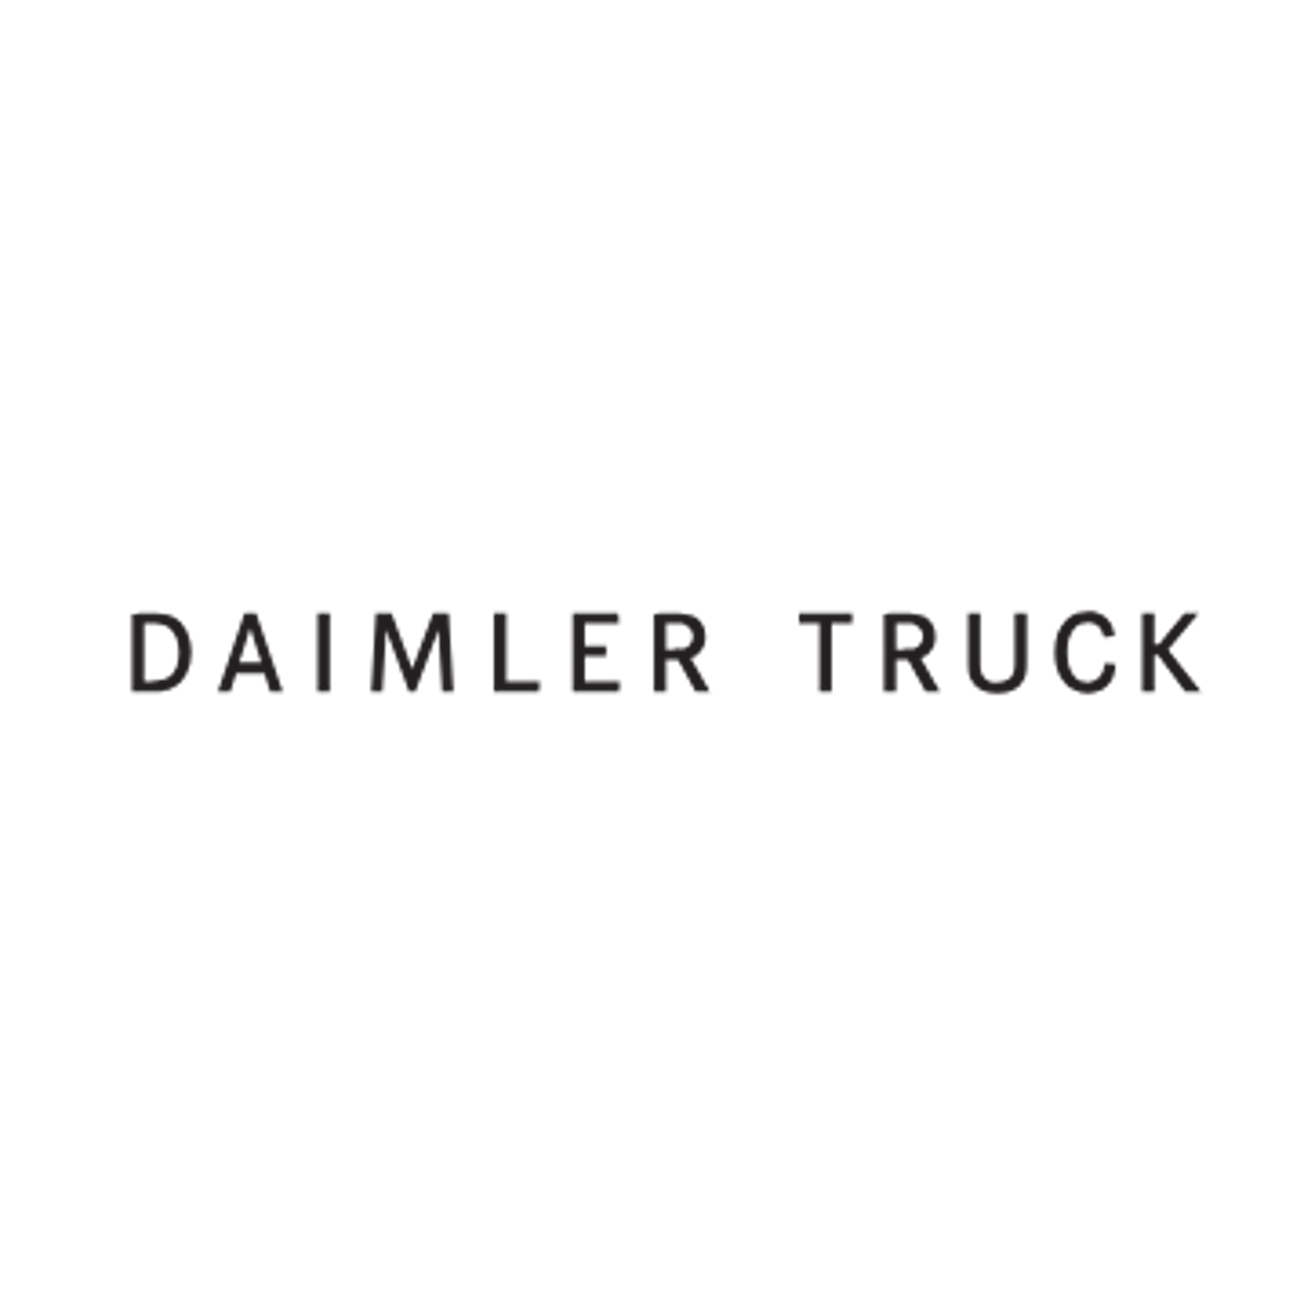 Daimlertruck